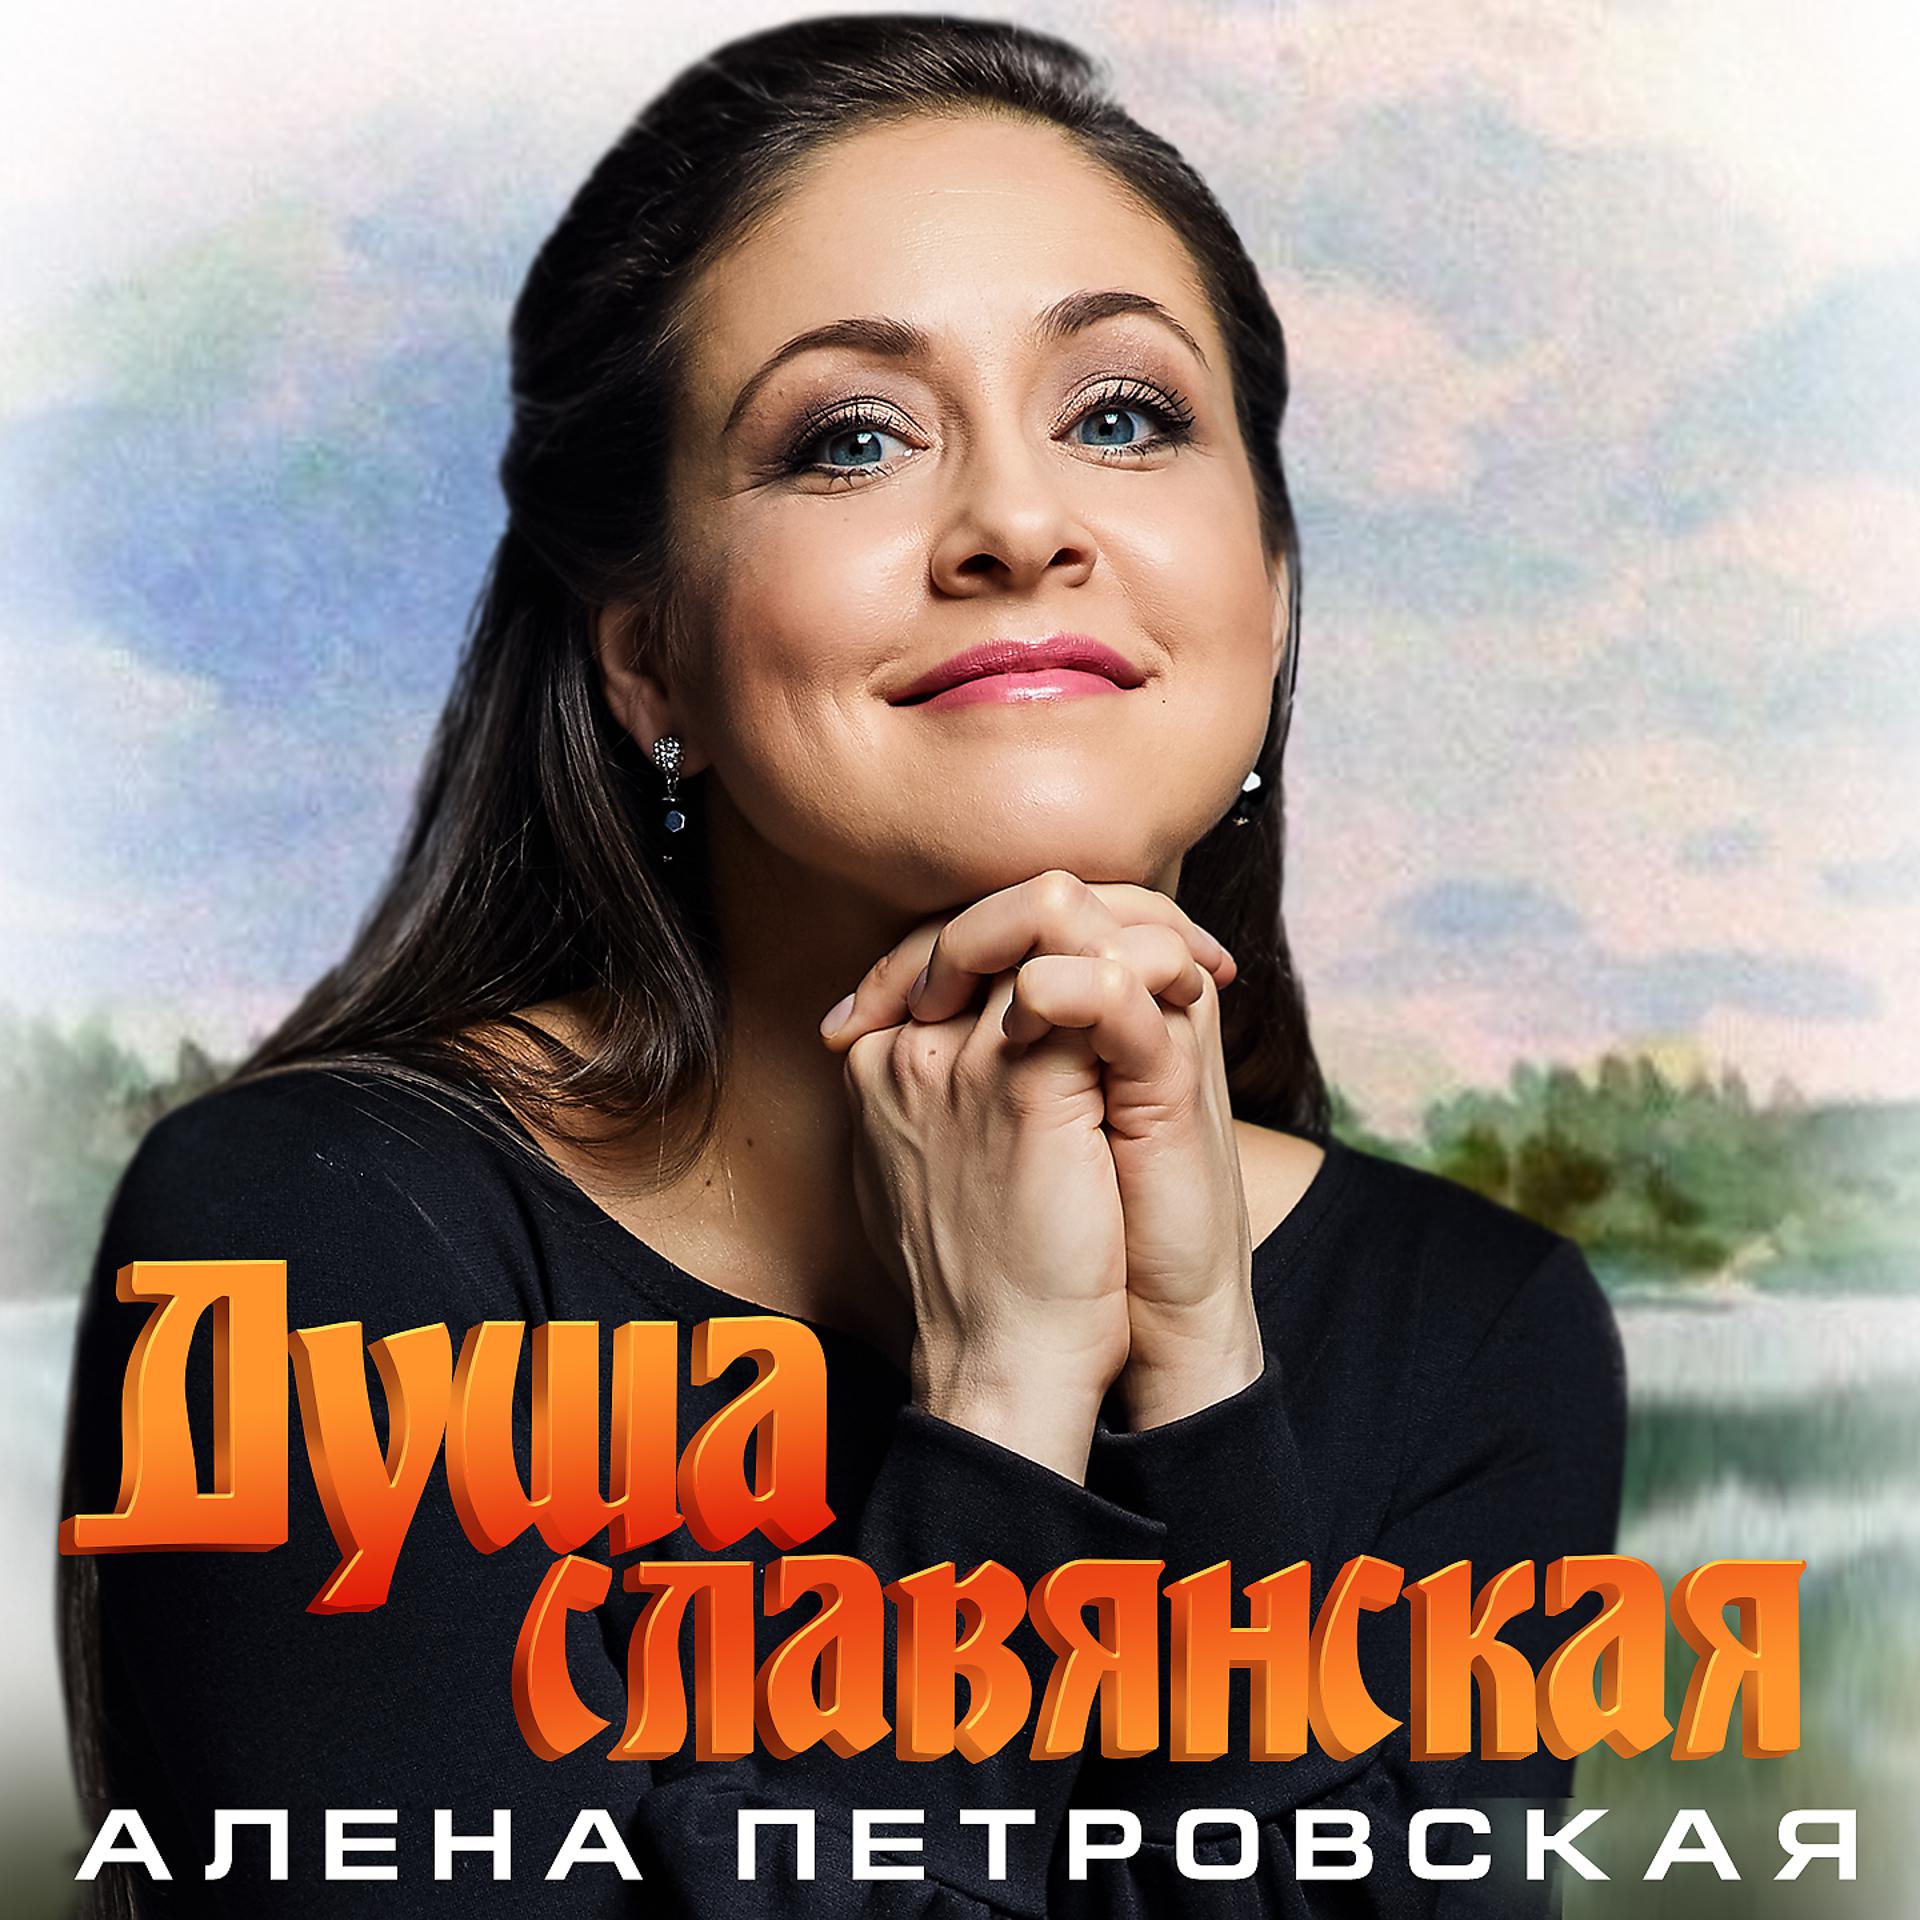 Постер альбома Душа славянская